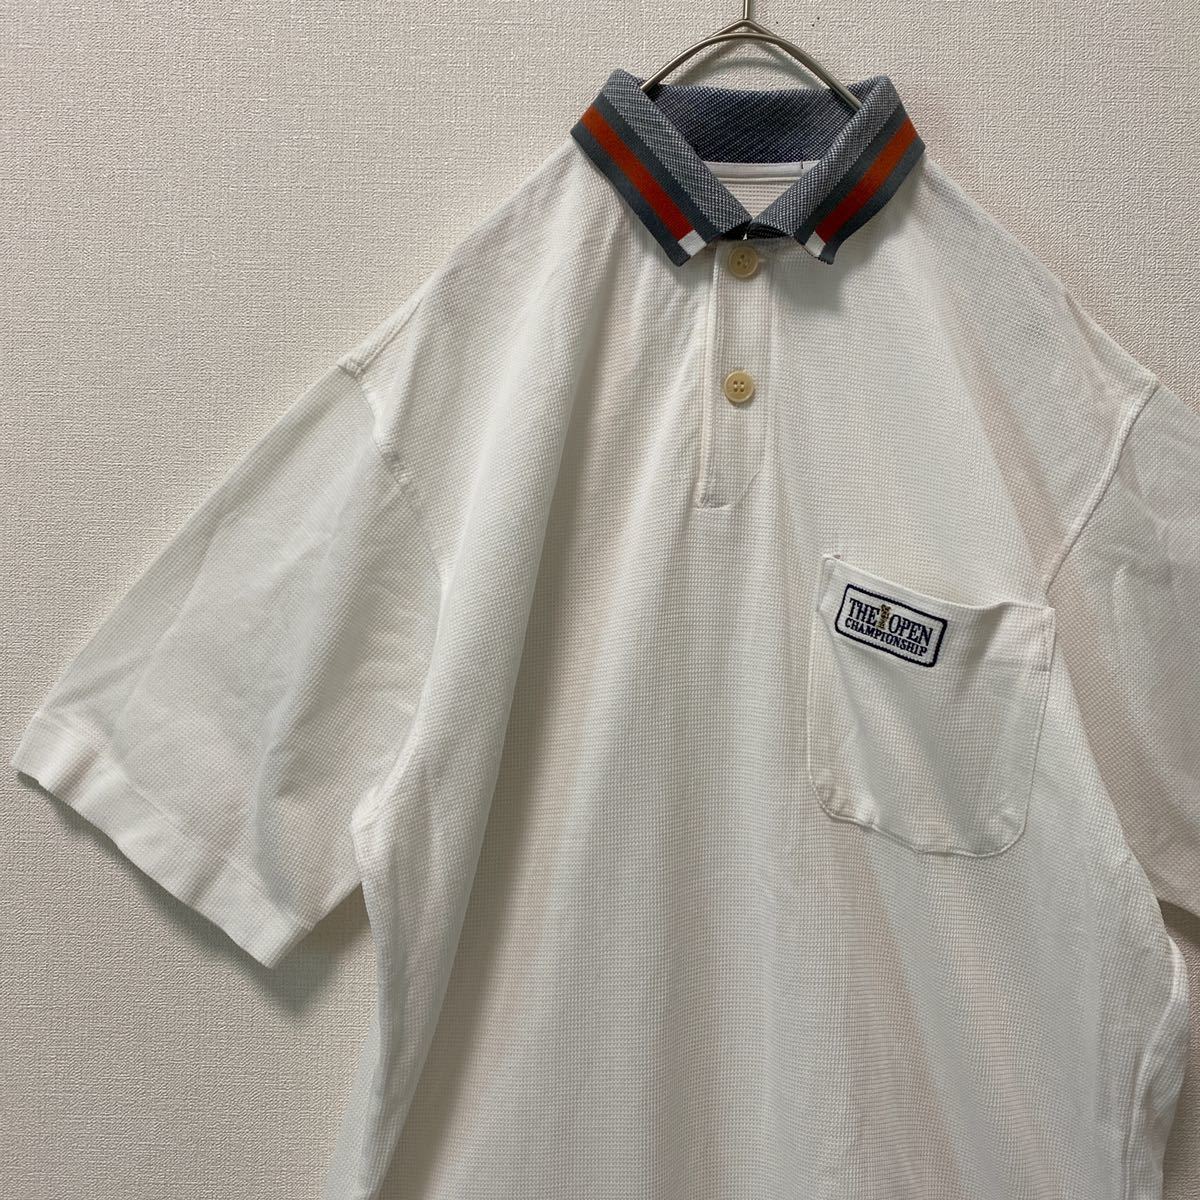 Mizuno Golf одежда рубашка-поло белый цвет воротник имеется Mizuno вышивка Logo GOLF белый 